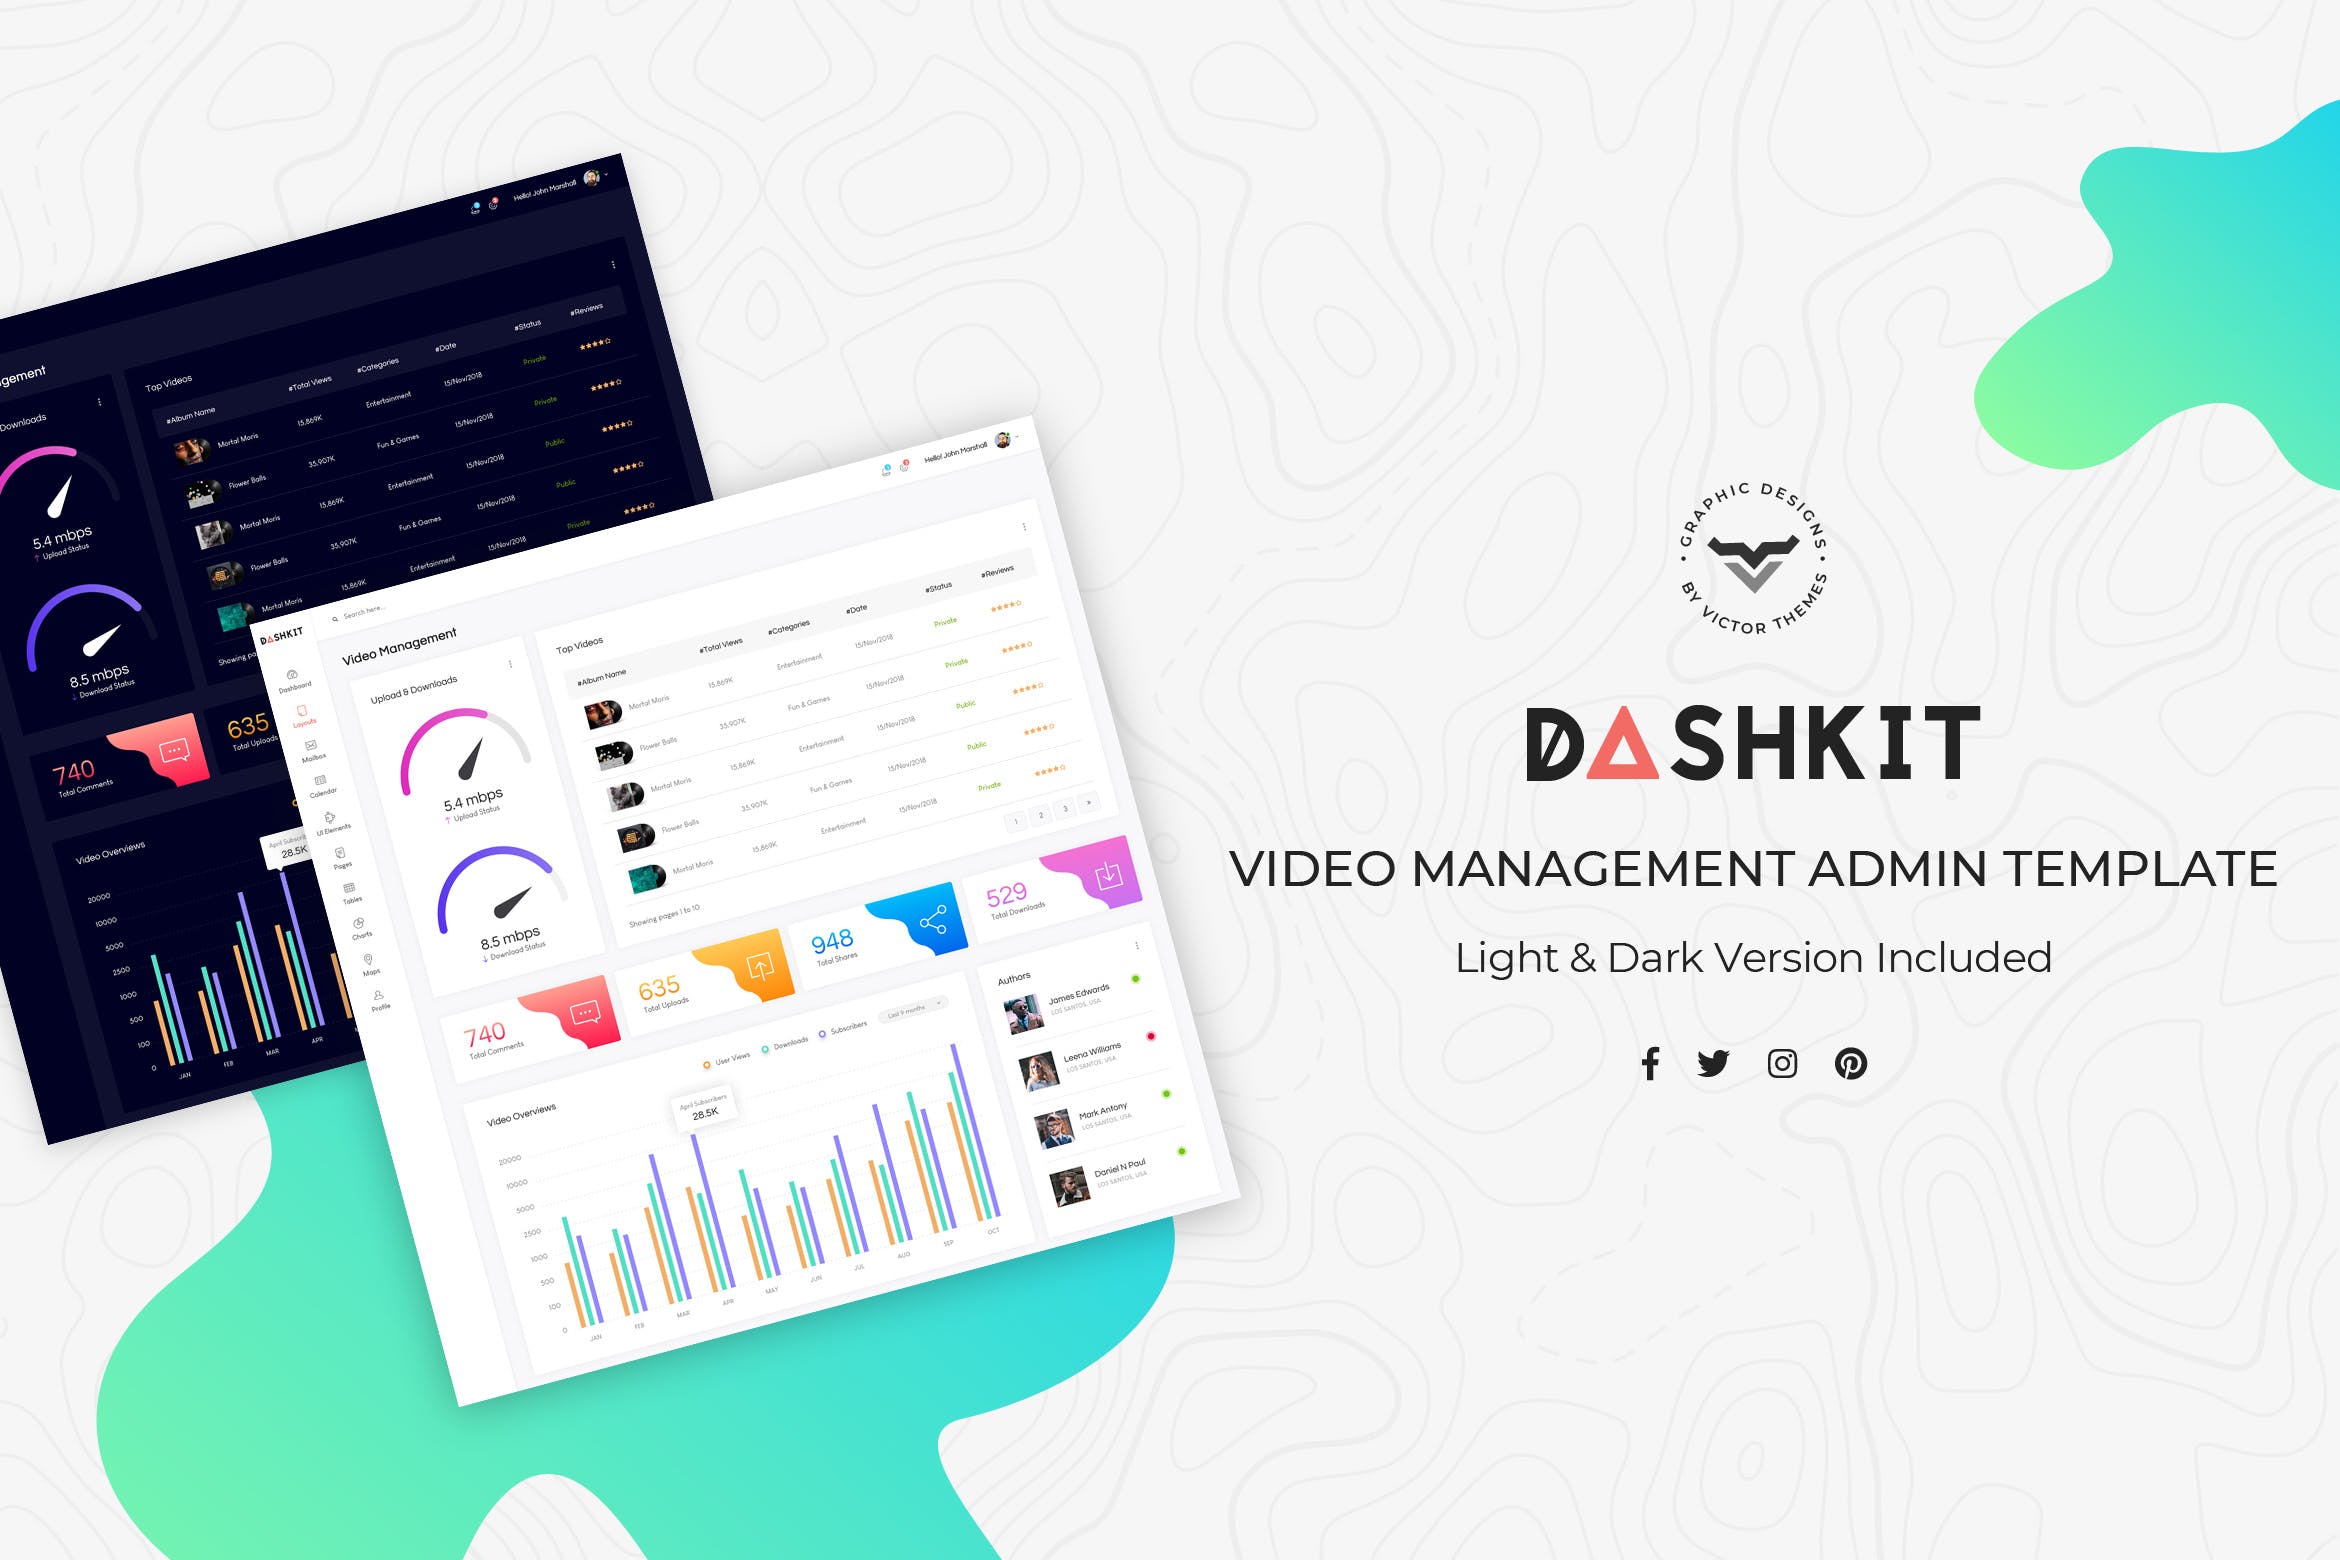 视频门户网站后台管理界面设计第一素材精选模板 Video Management Admin Dashboard UI Kit插图